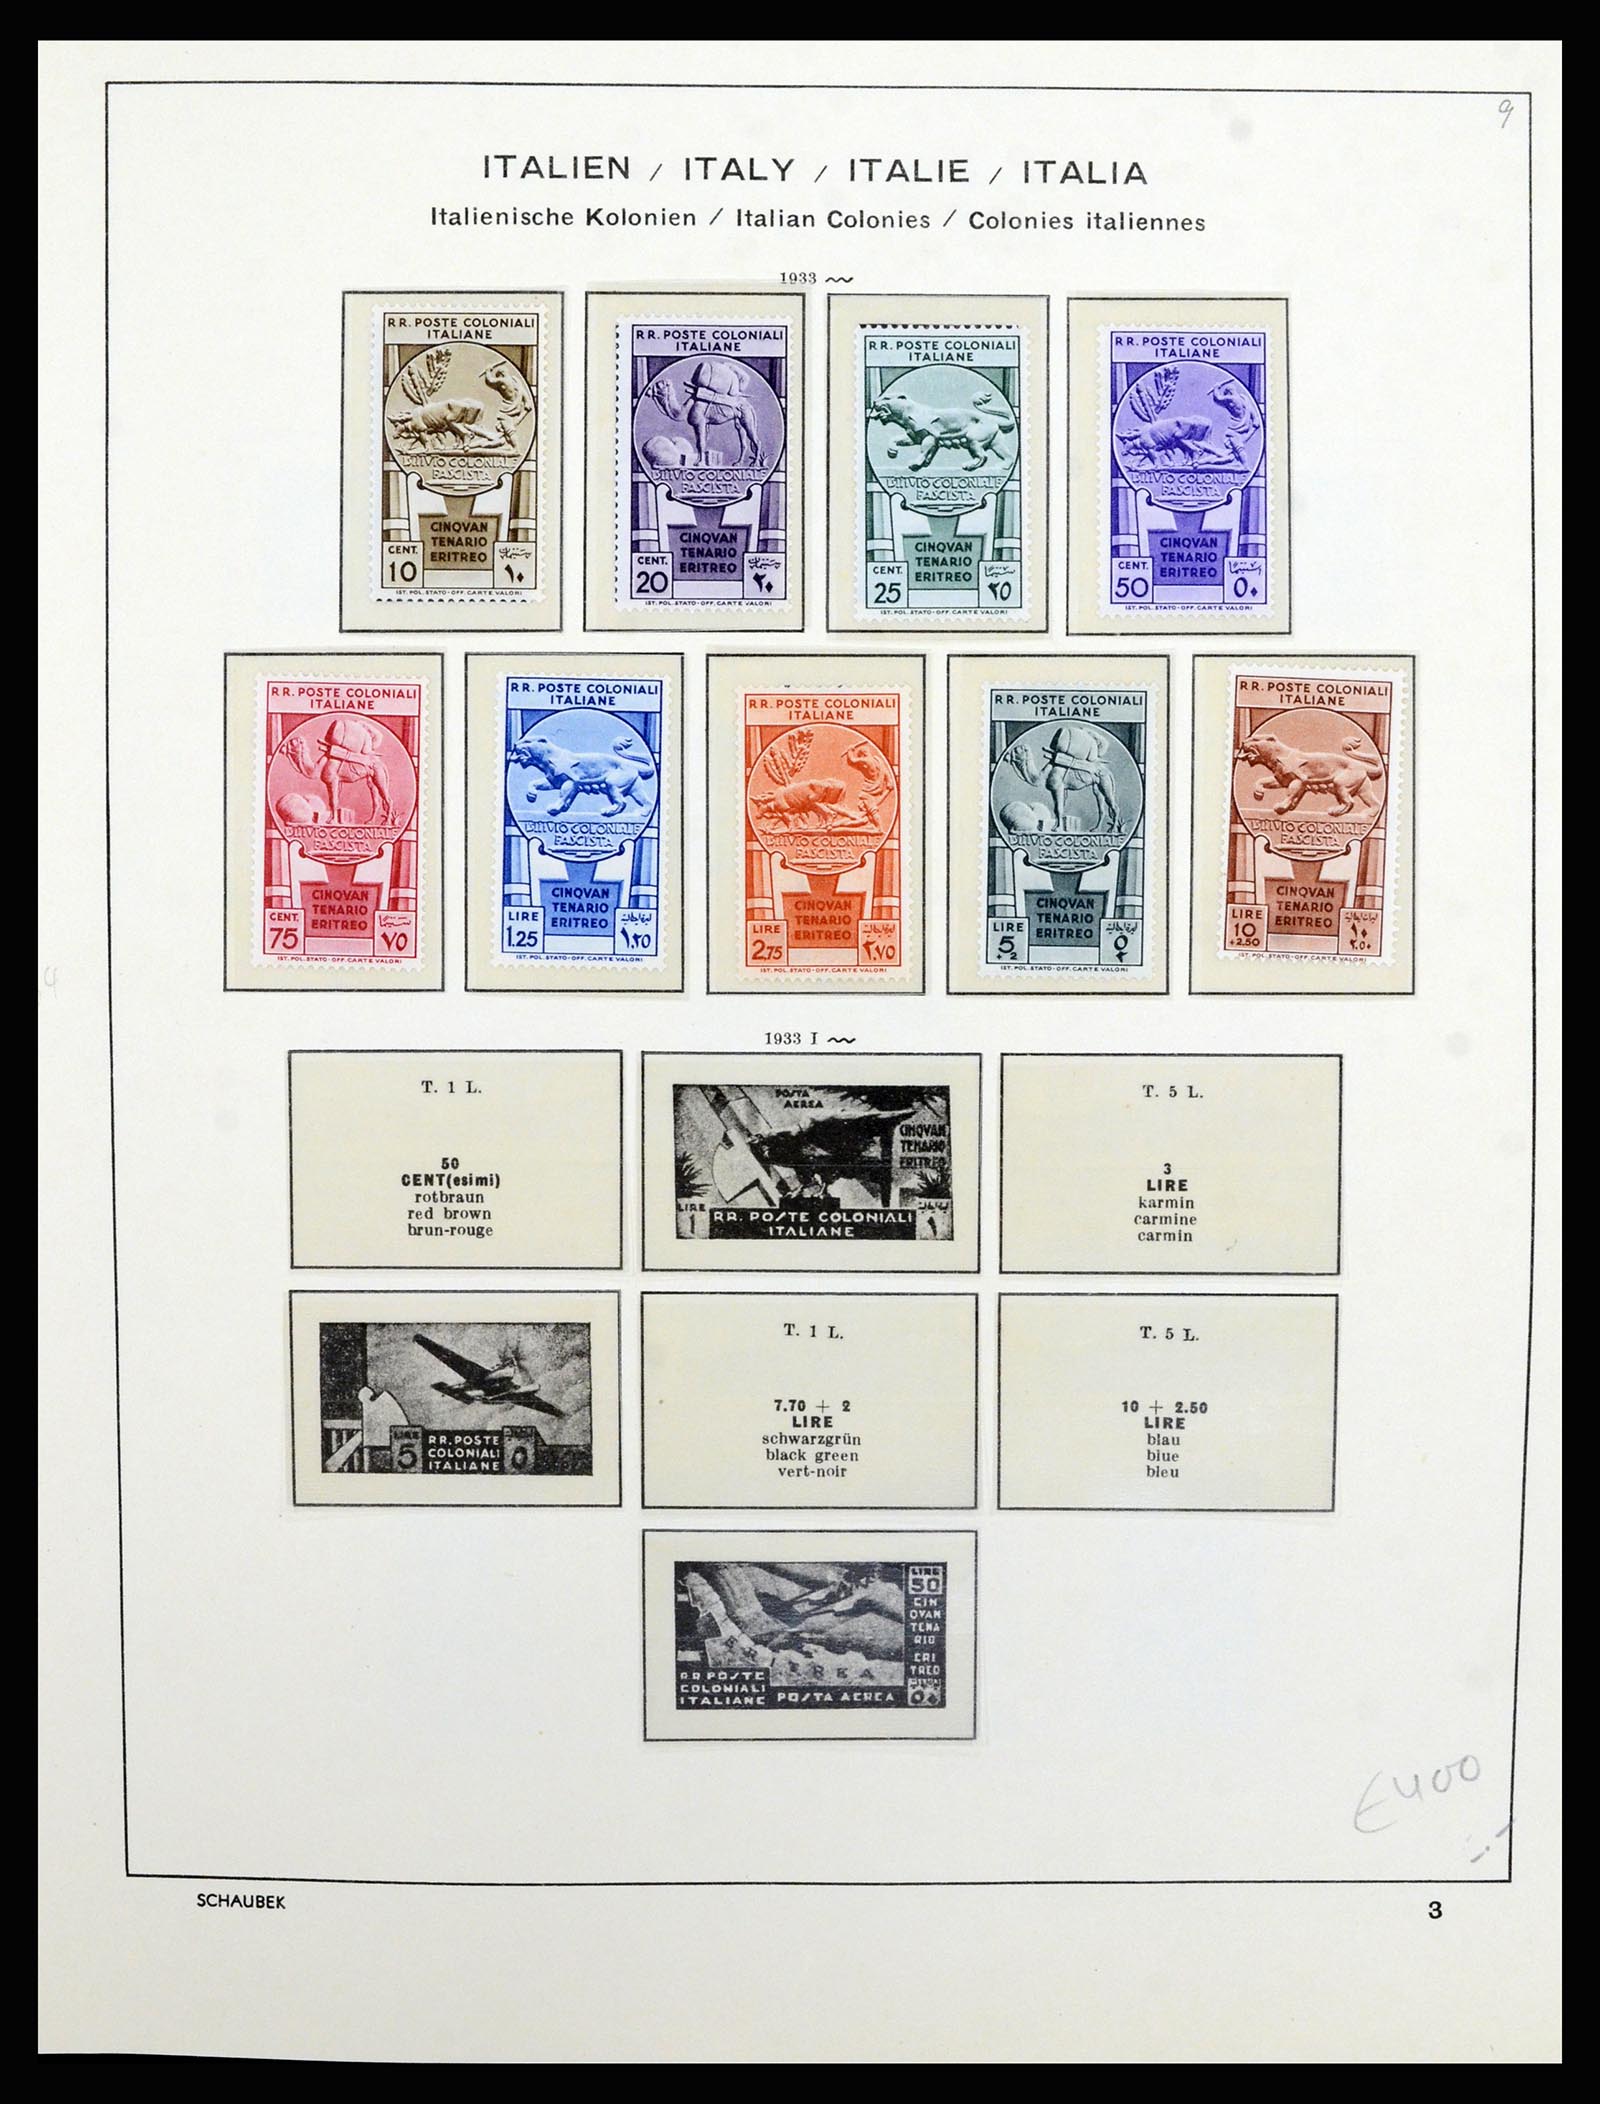 36577 024 - Stamp collection 36577 Italiaanse gebieden 1870-1940.